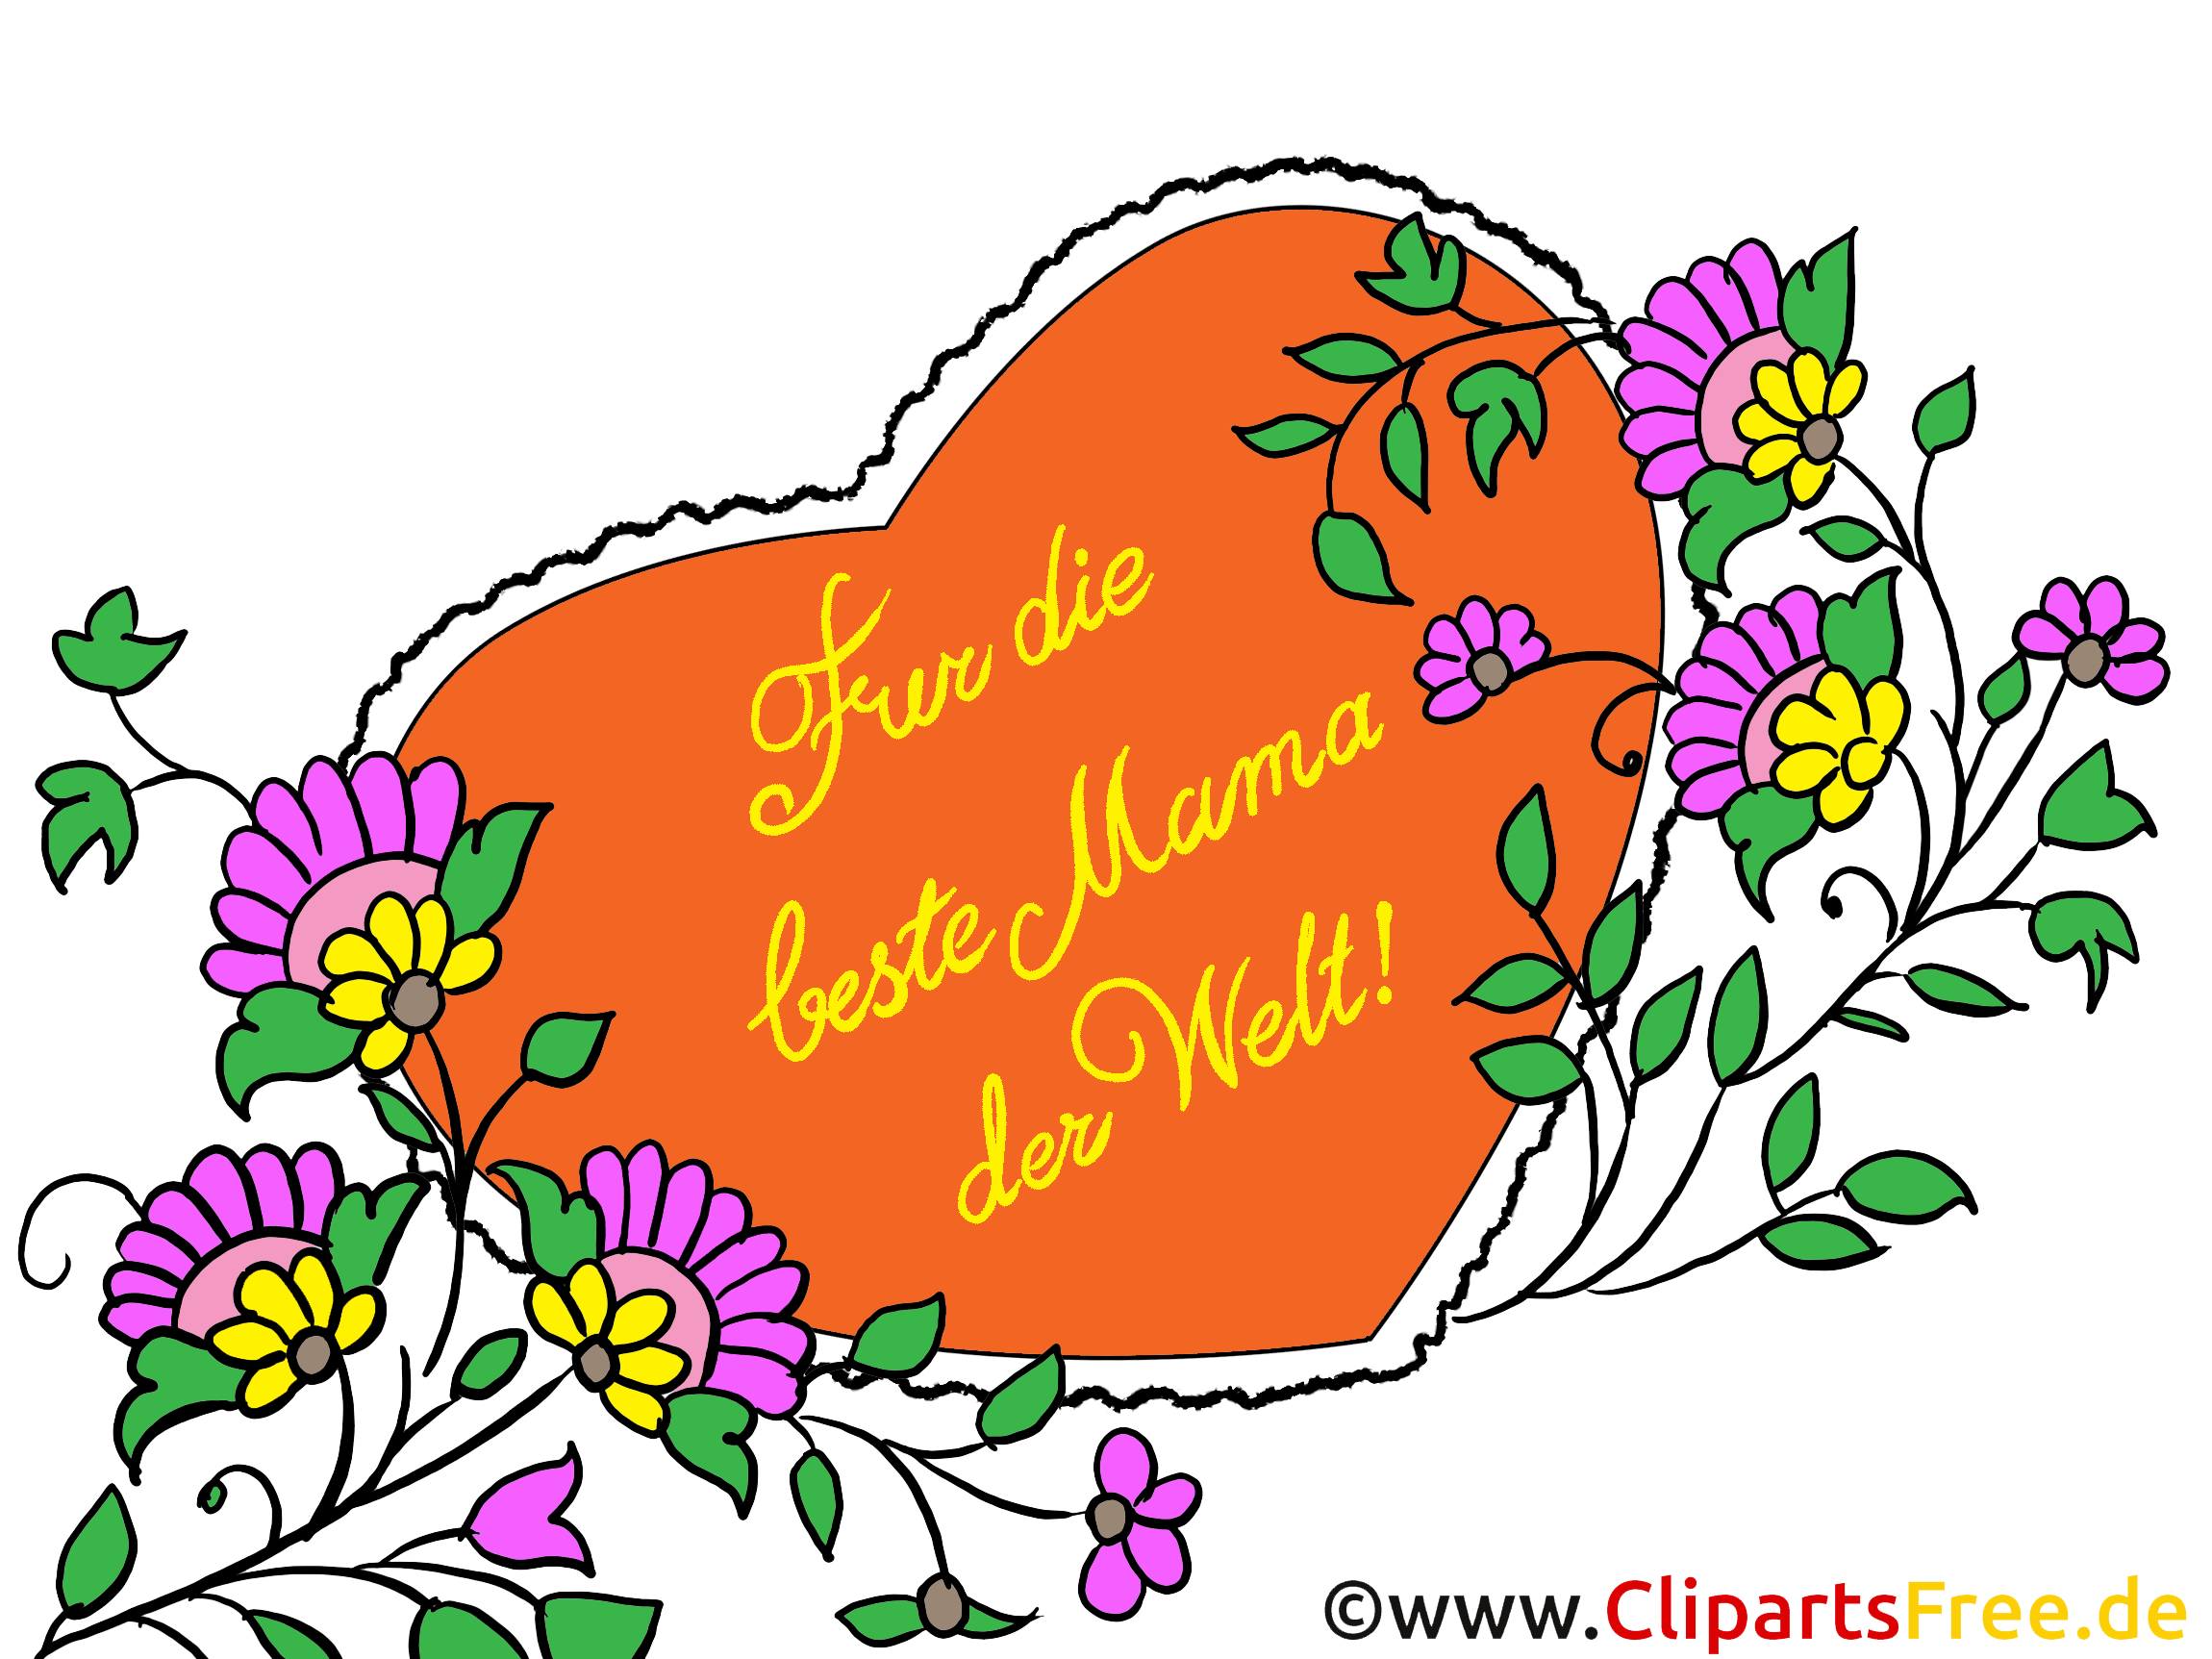 Zum Muttertag Glückwunschkarte Clipart Bild Illustration.